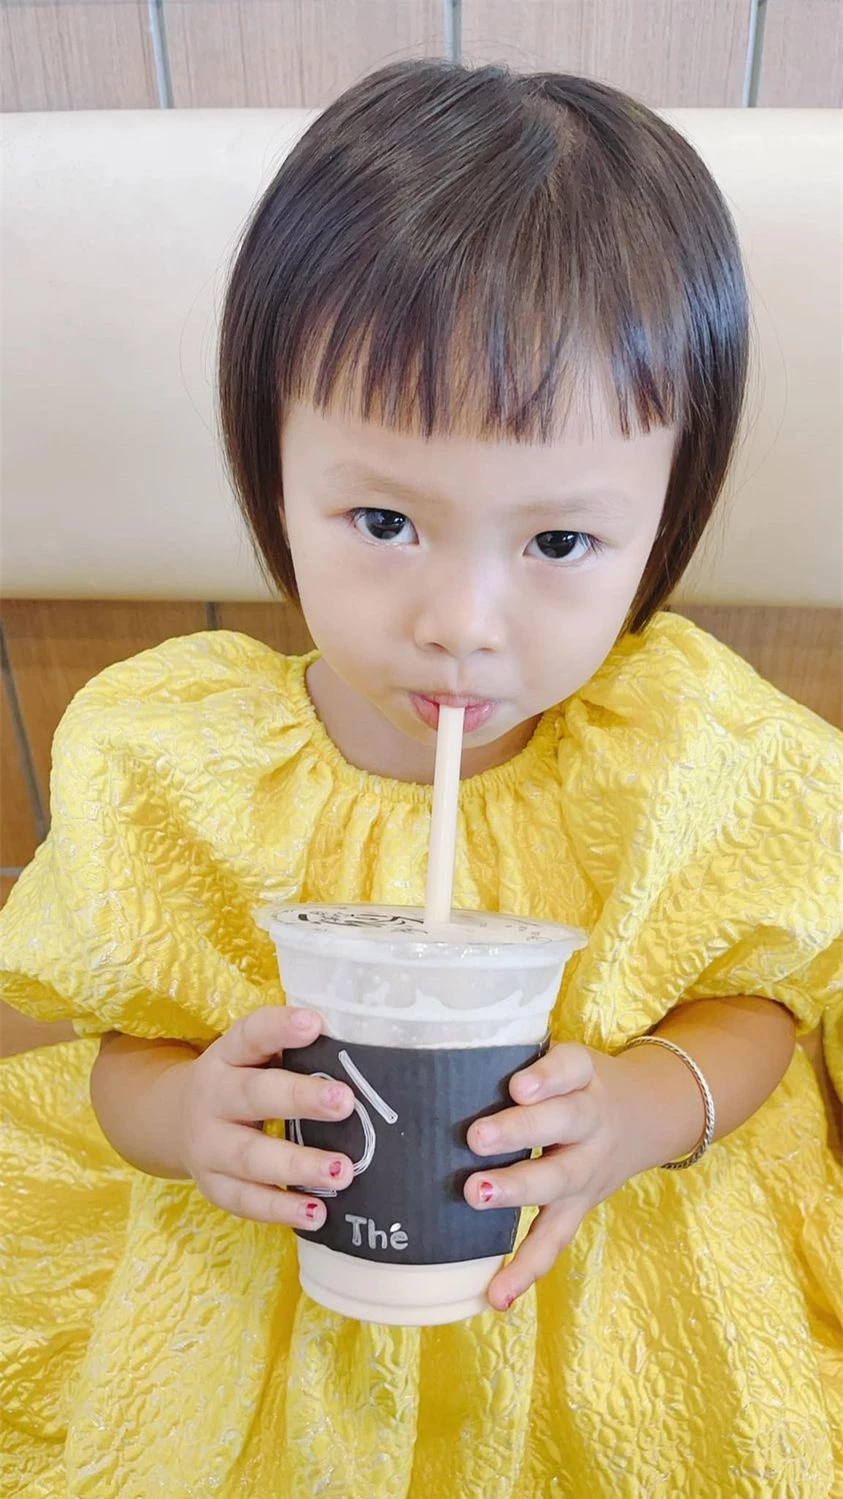 Con gái nuôi thứ 8 của NTK Đỗ Mạnh Cường ngày đầu tới trường: Bố tút tát cho tóc mới, mặc đồ hiệu như tiểu thư đi học - Ảnh 6.